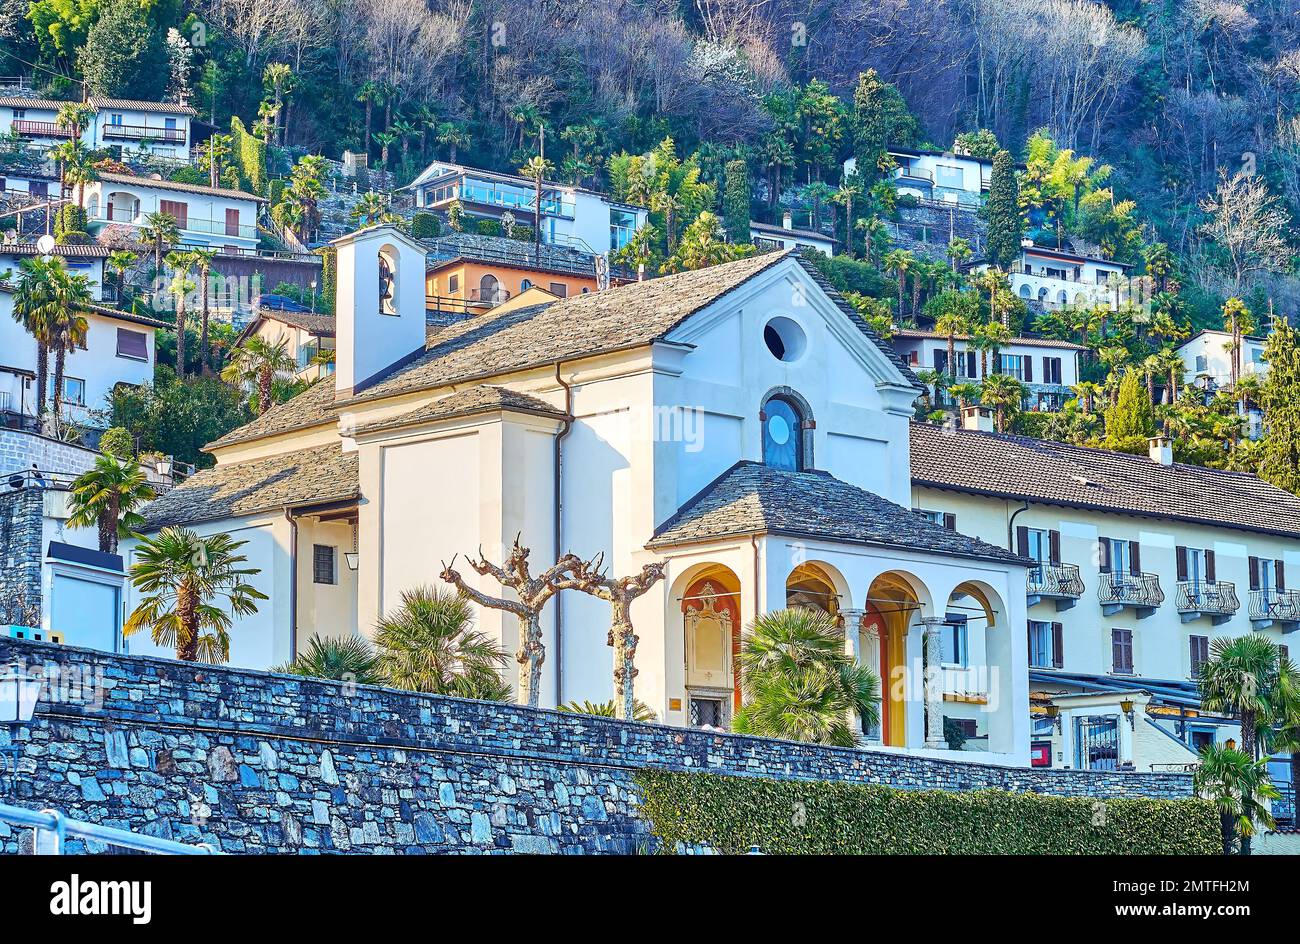 La iglesia de Madonna delle Grazie contra la ladera de la montaña con casas de Ronco sopra Ascona, Suiza Foto de stock